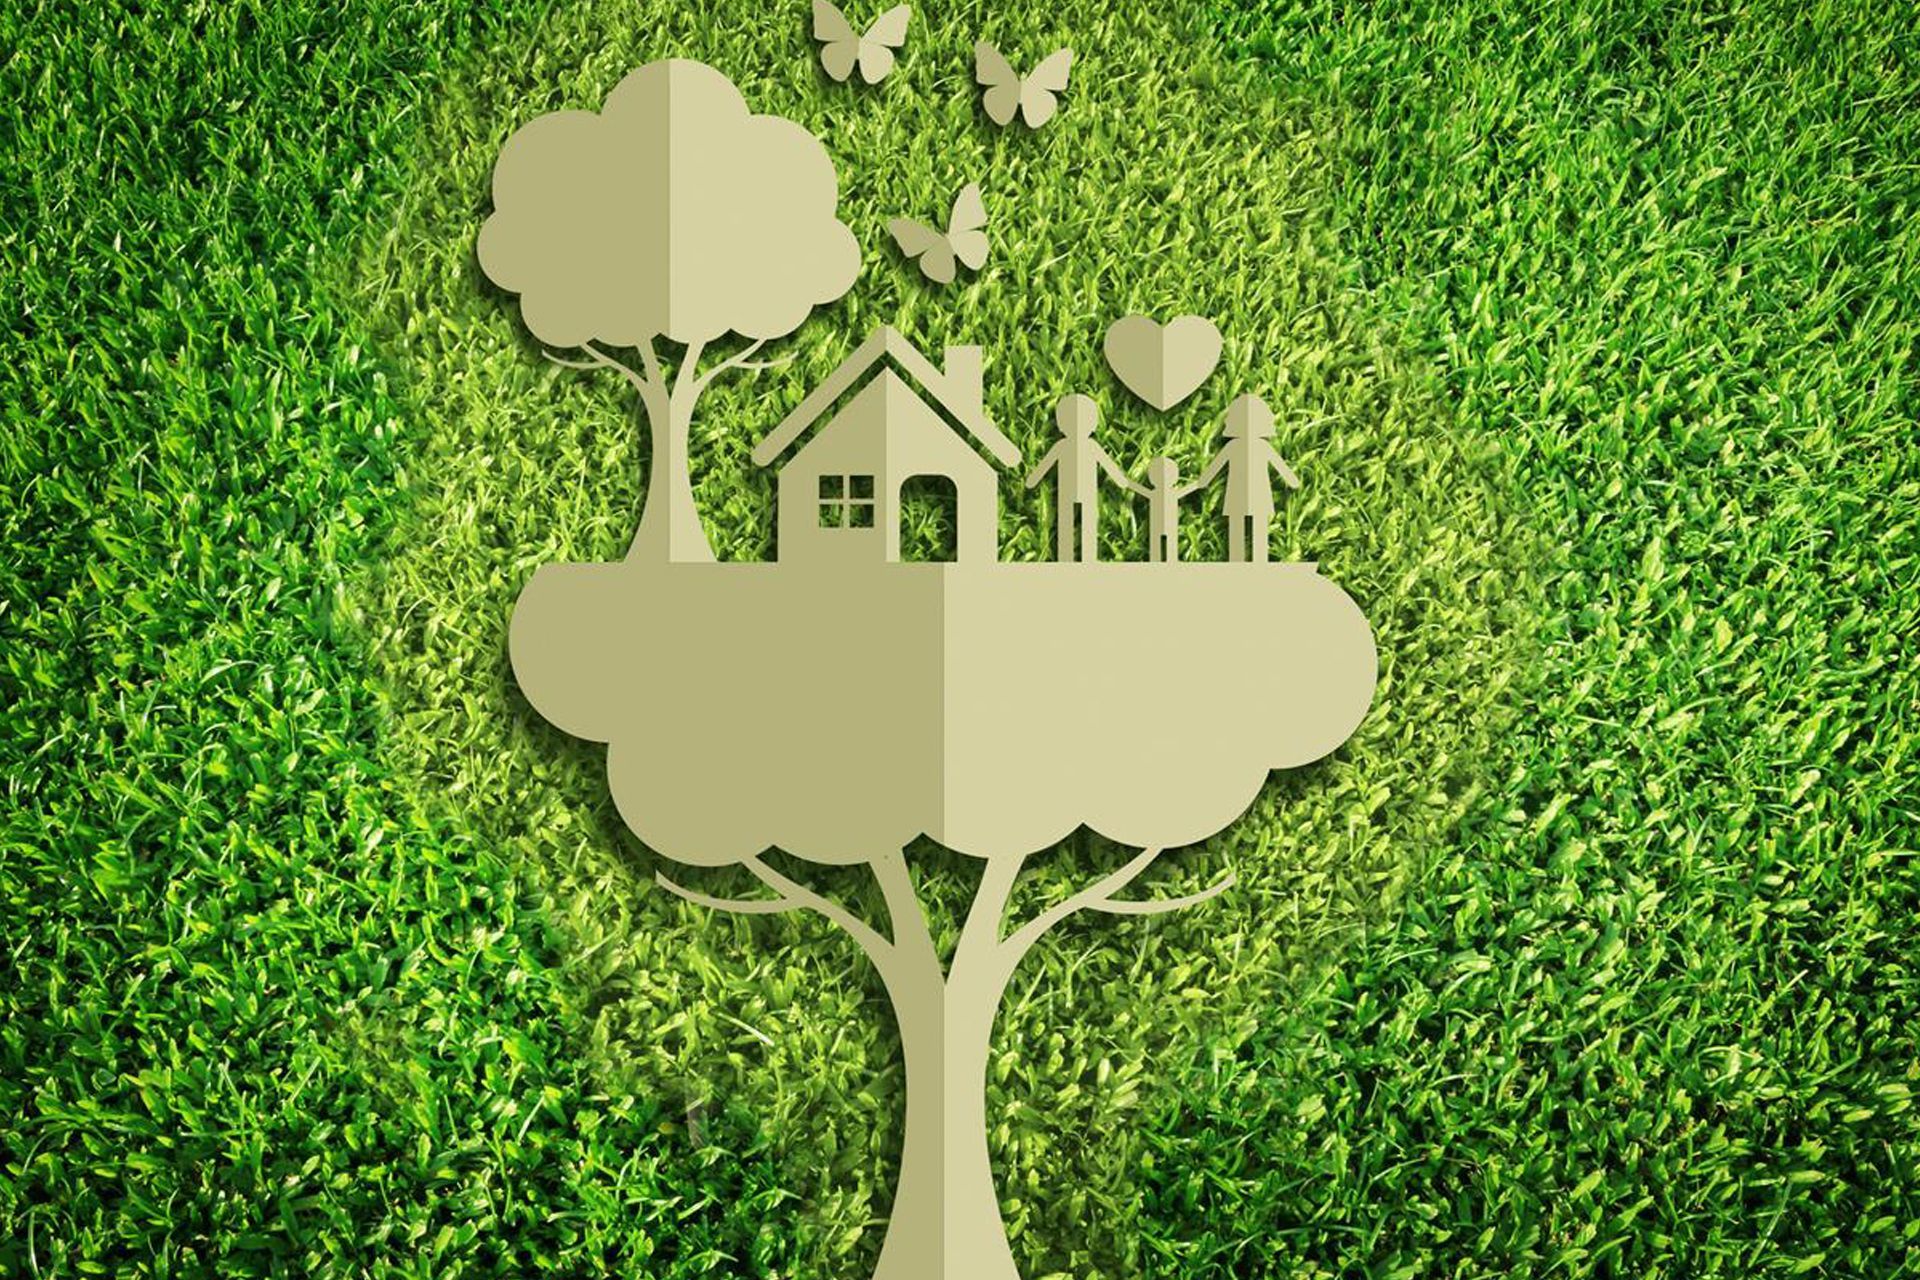 Den ekologiska omställningen kan genomföras i små steg och med allas samarbete för att utvecklas mot en "grön" ekonomi och lämna det gamla konsumtions- och exploaterande samhället bakom sig.